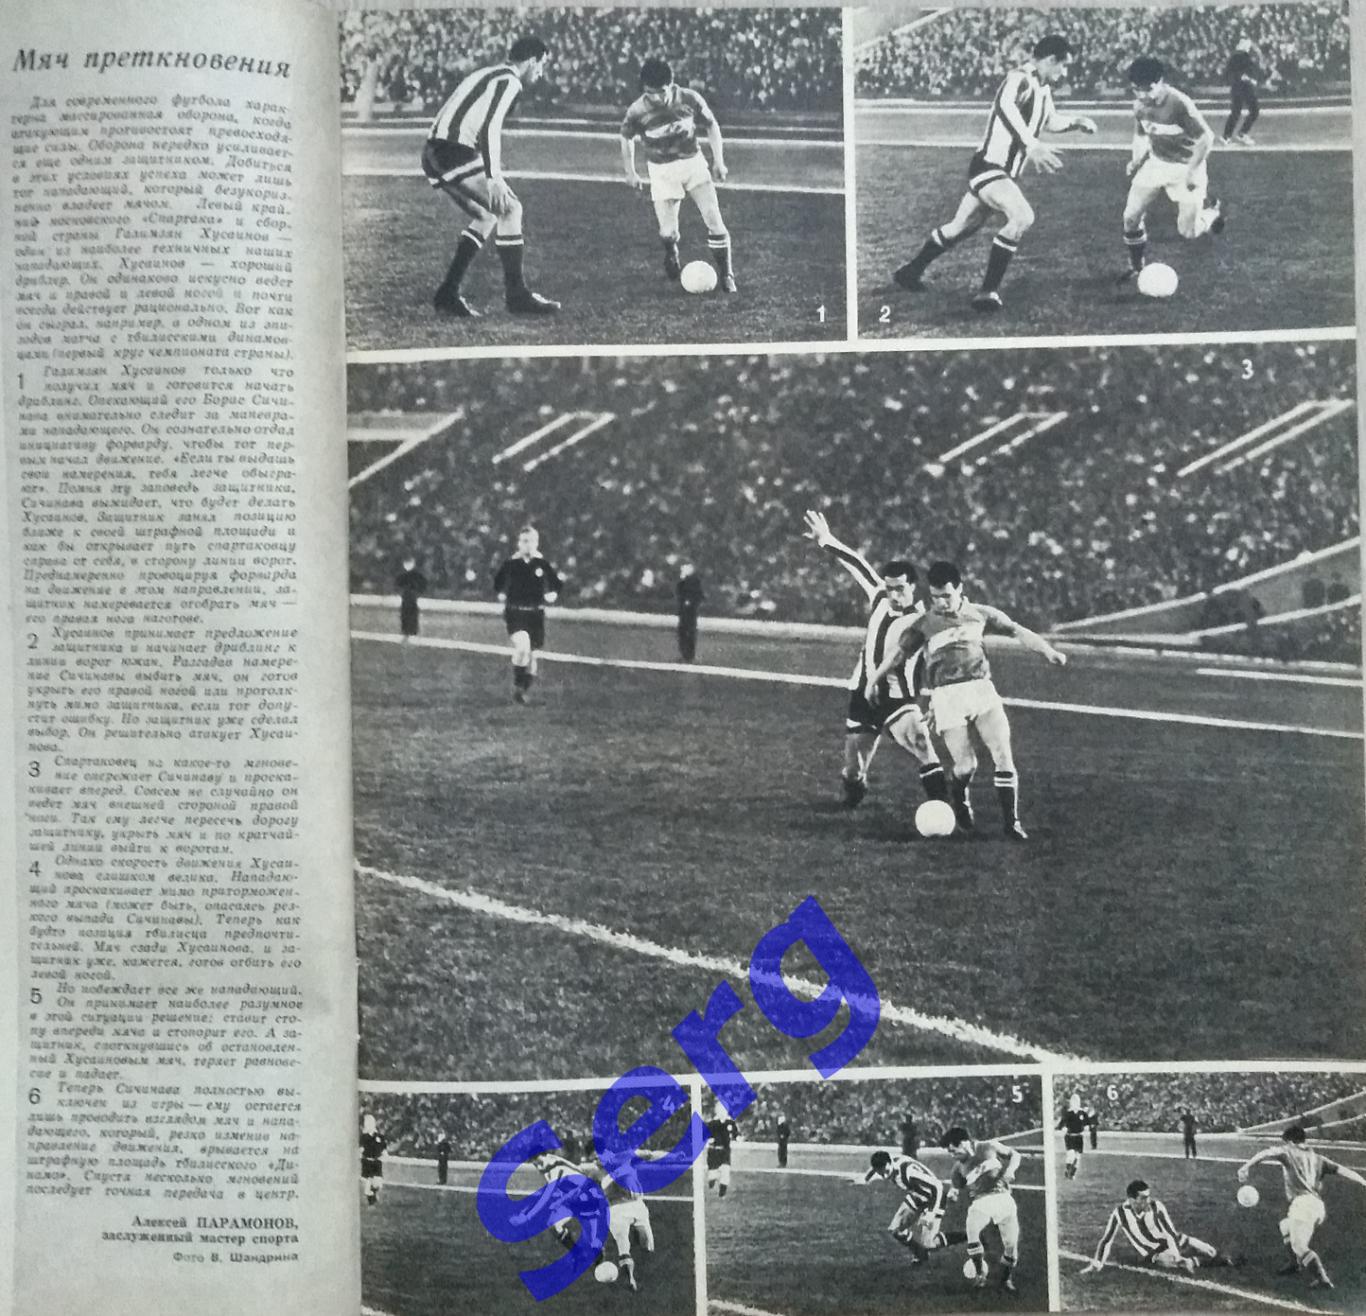 Журнал Спортивные игры №8 1963 год 1